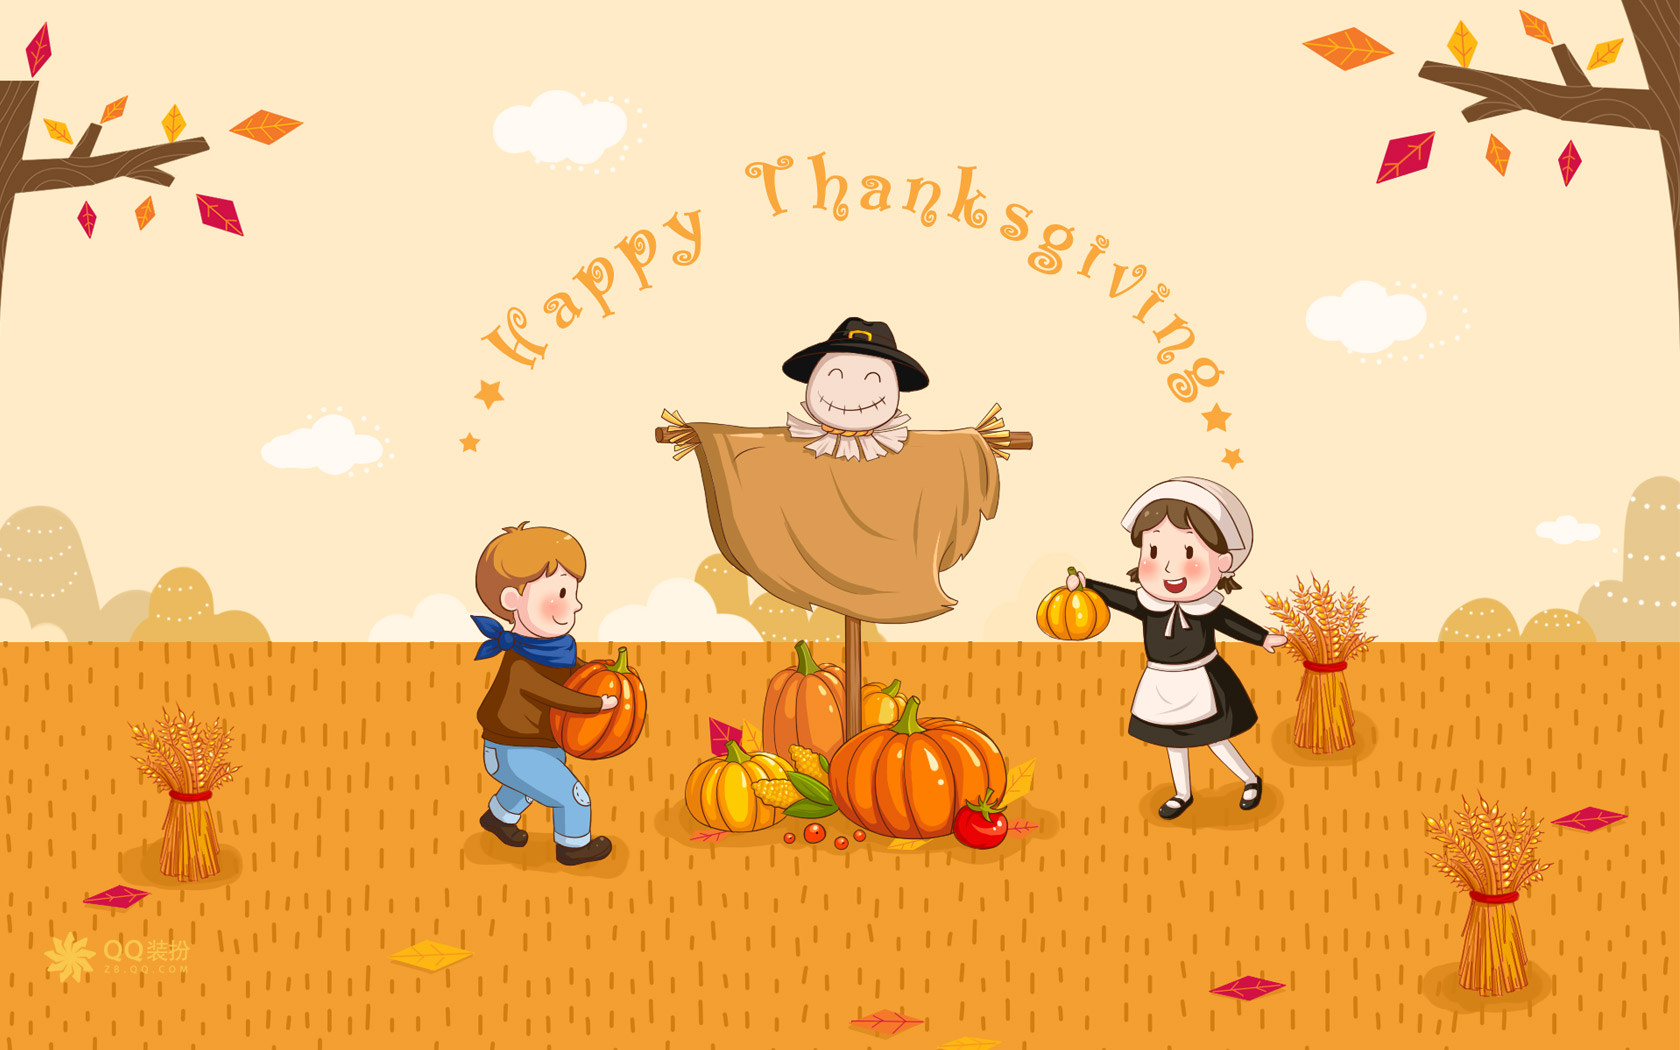 少儿英语儿歌 感恩节 Thanksgiving day 相关视频分享